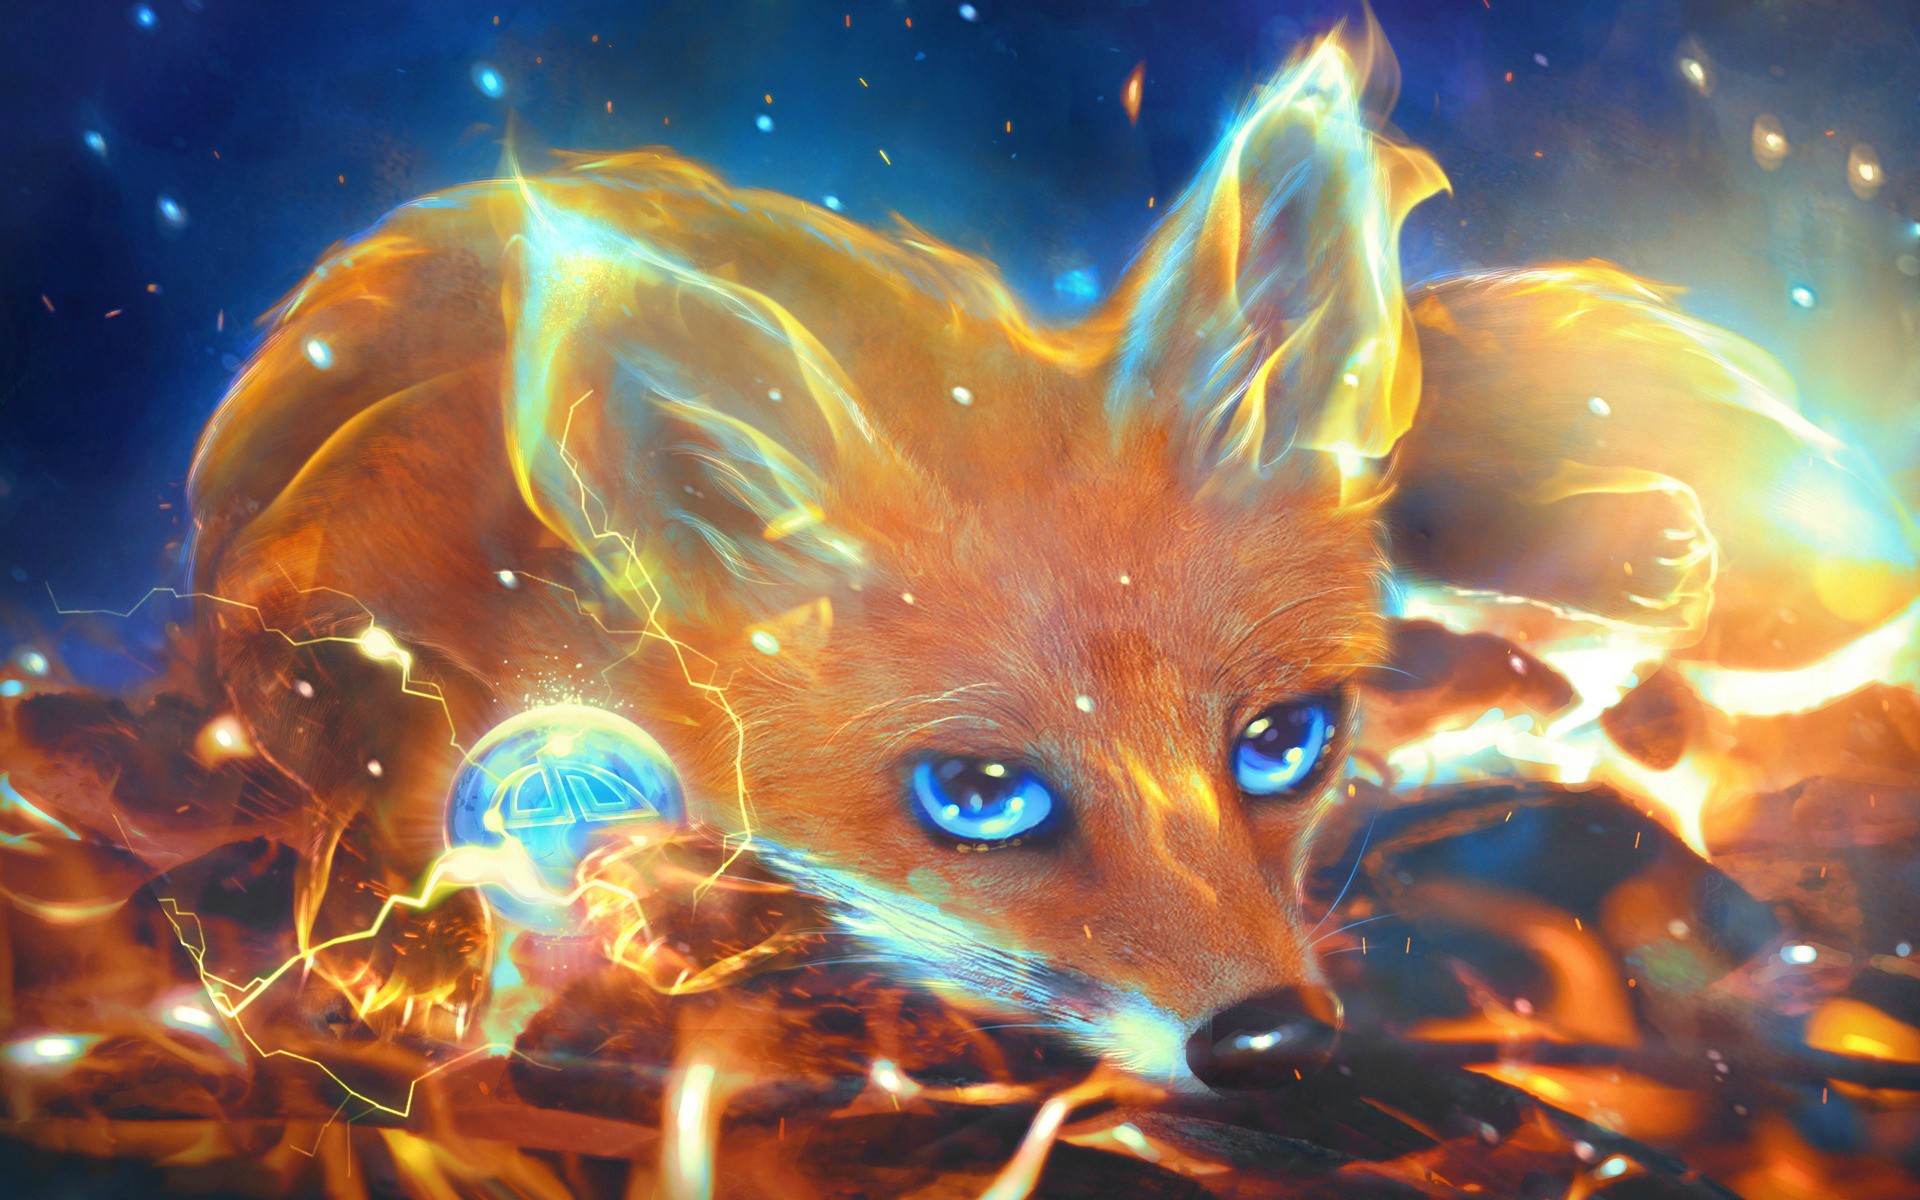 Tpof fox. Огненная лисица Кицунэ. Кицунэ Огненный Лис. Магическая лиса Кицунэ. Девятихвостый Лис Огненный.